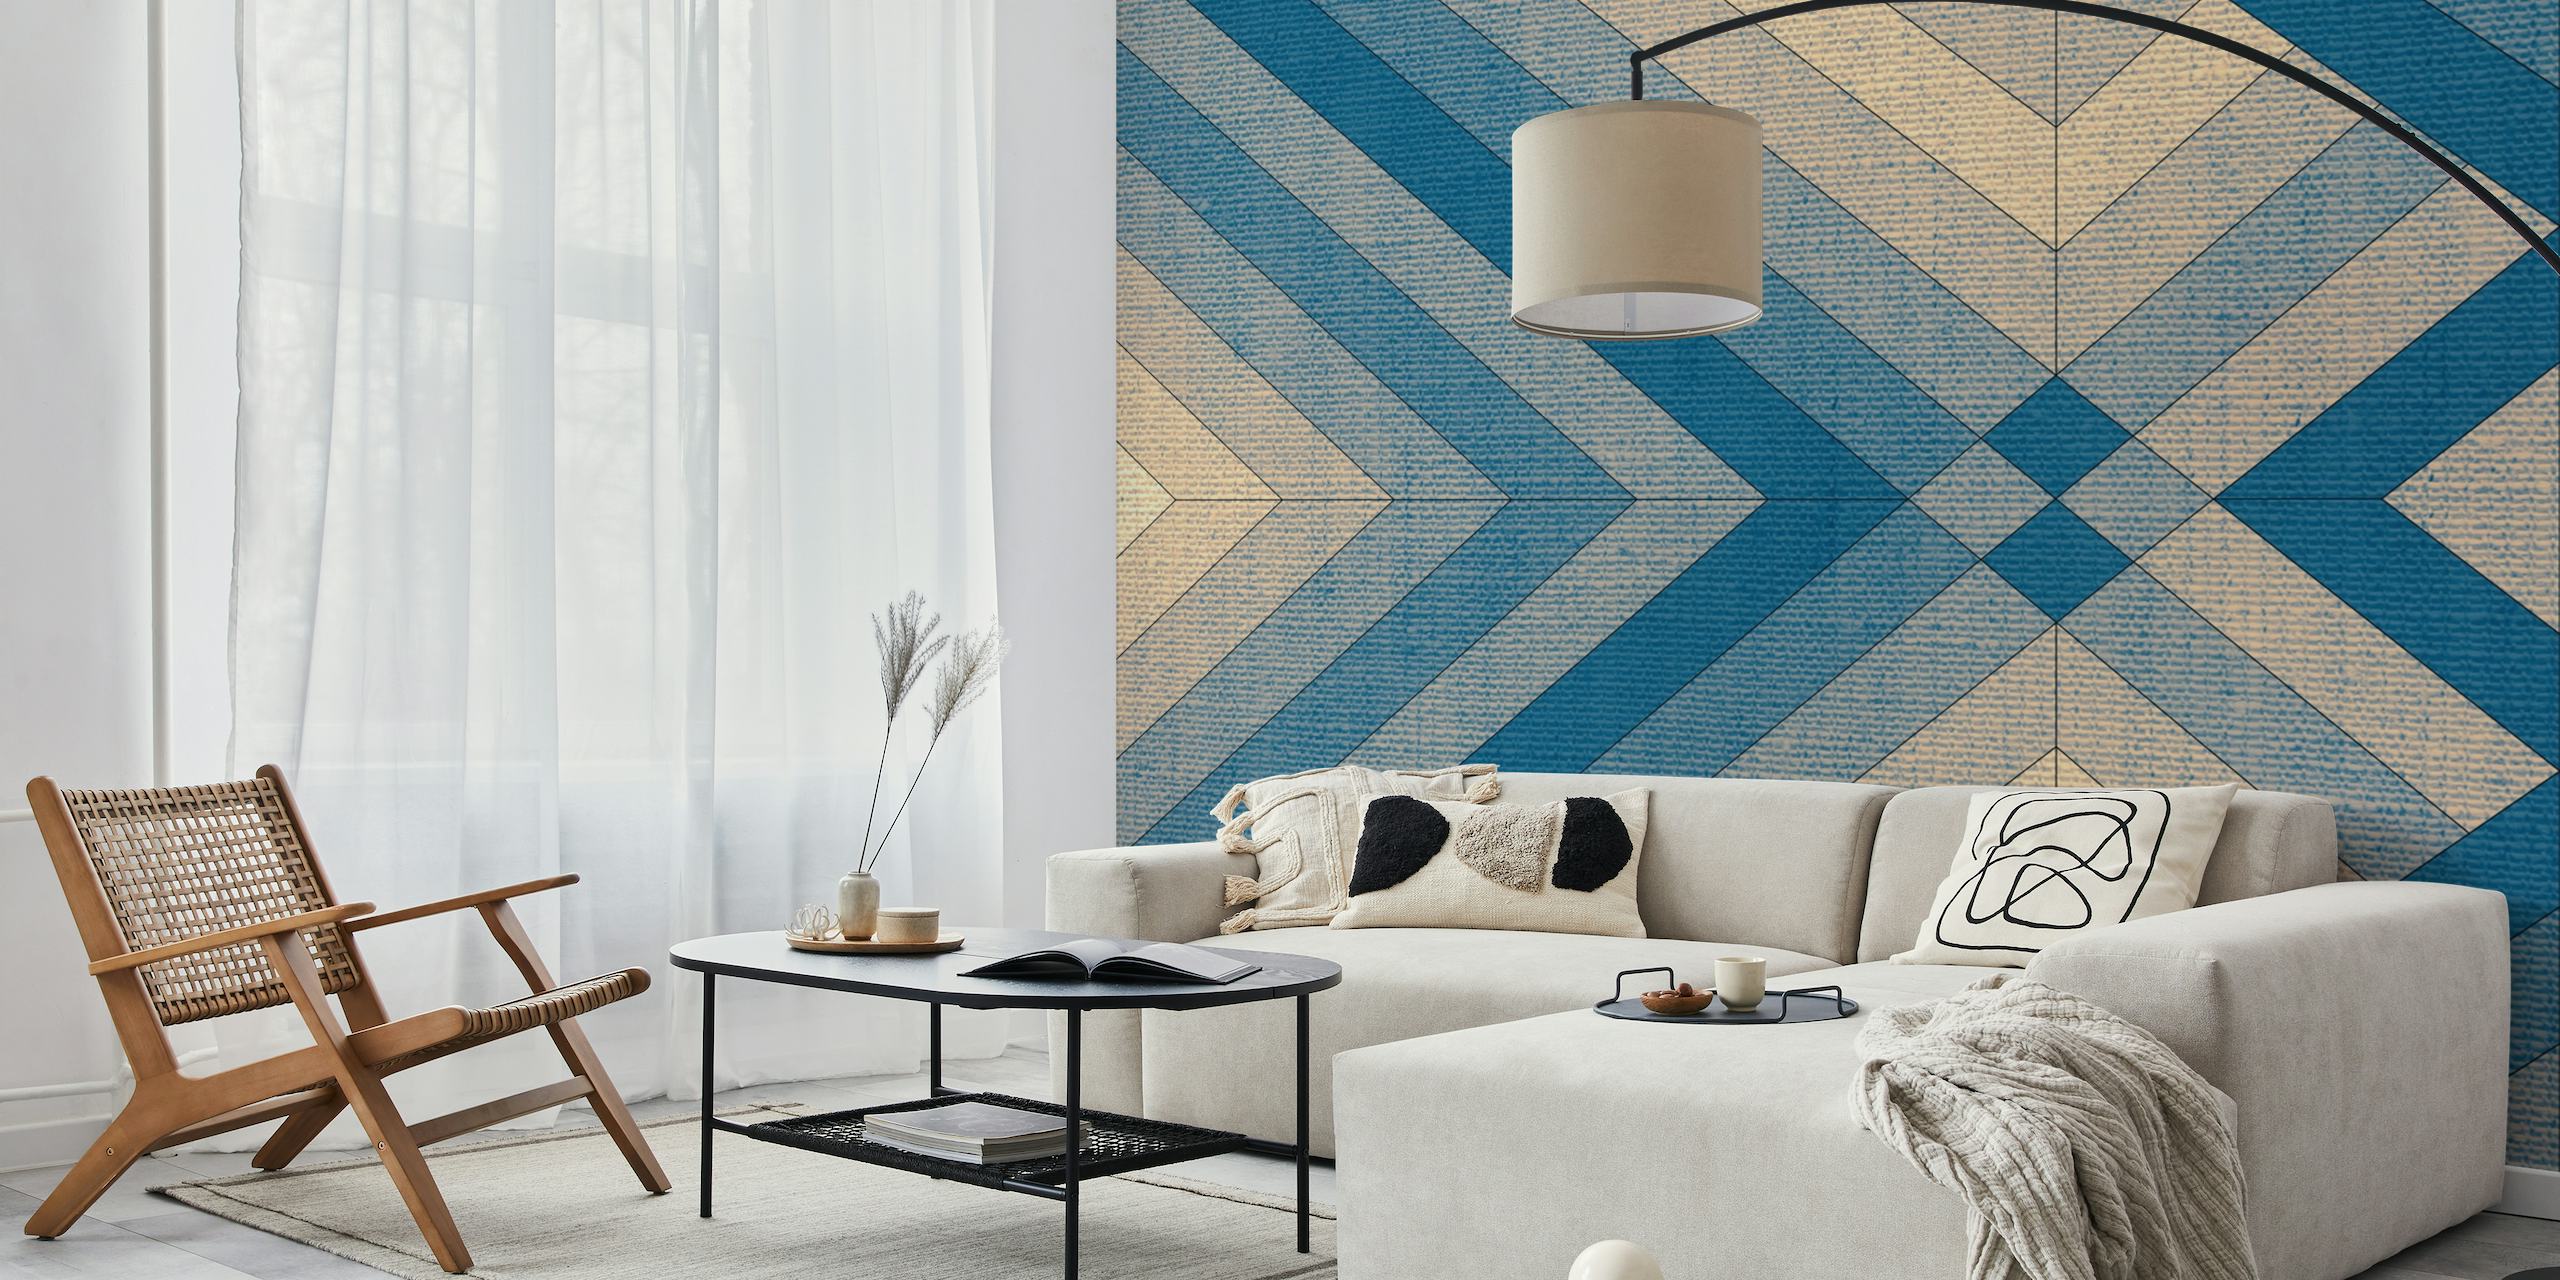 Zidna slika s geometrijskim uzorkom s teksturom poput tekstila u nijansama plave i bež boje